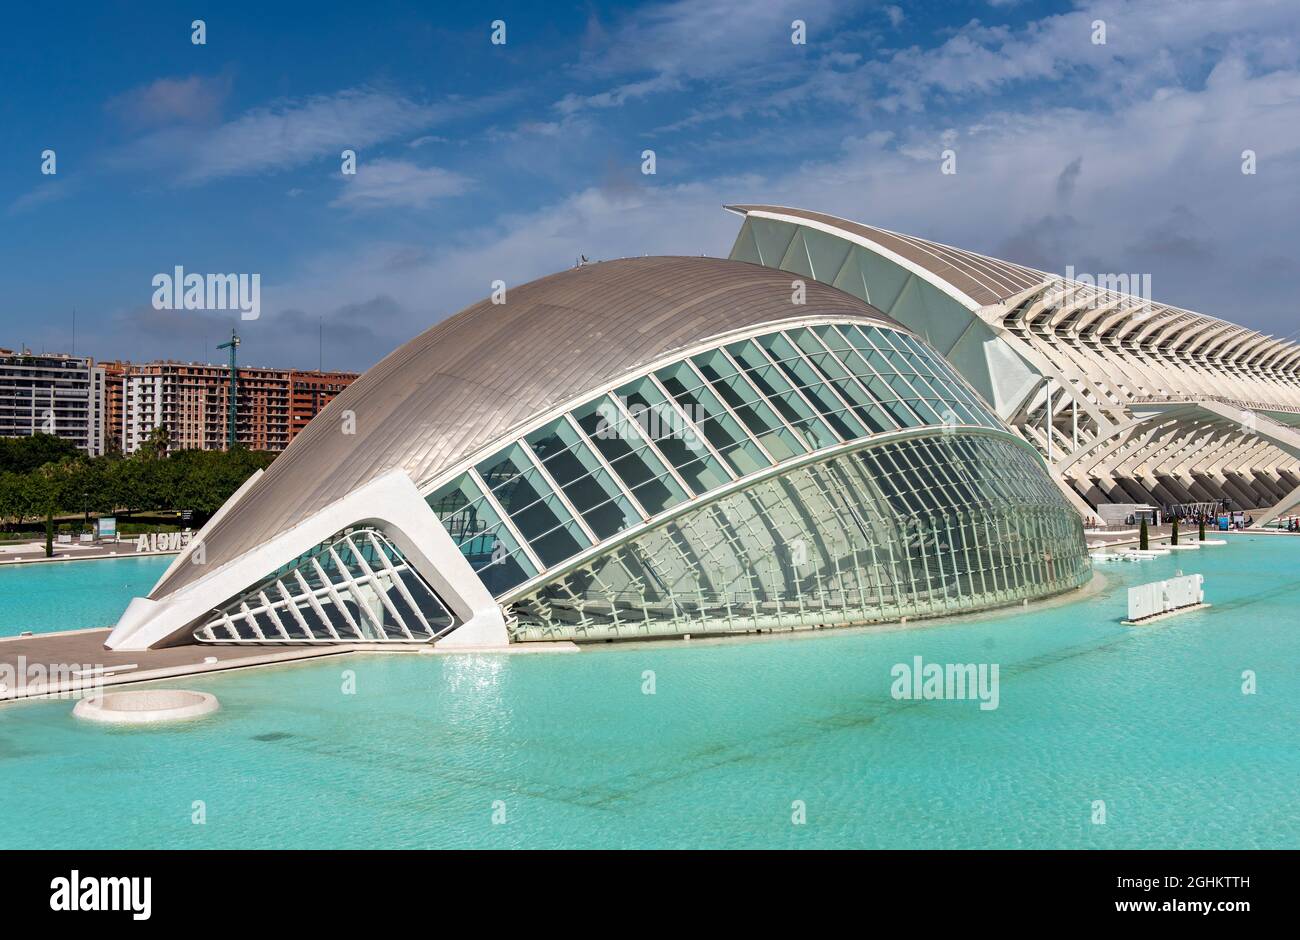 L'Hemisfèric (Hemisferic planetarium), City of Arts and Sciences (Ciudad de las Artes y las Ciencias), Valencia, Spain Stock Photo